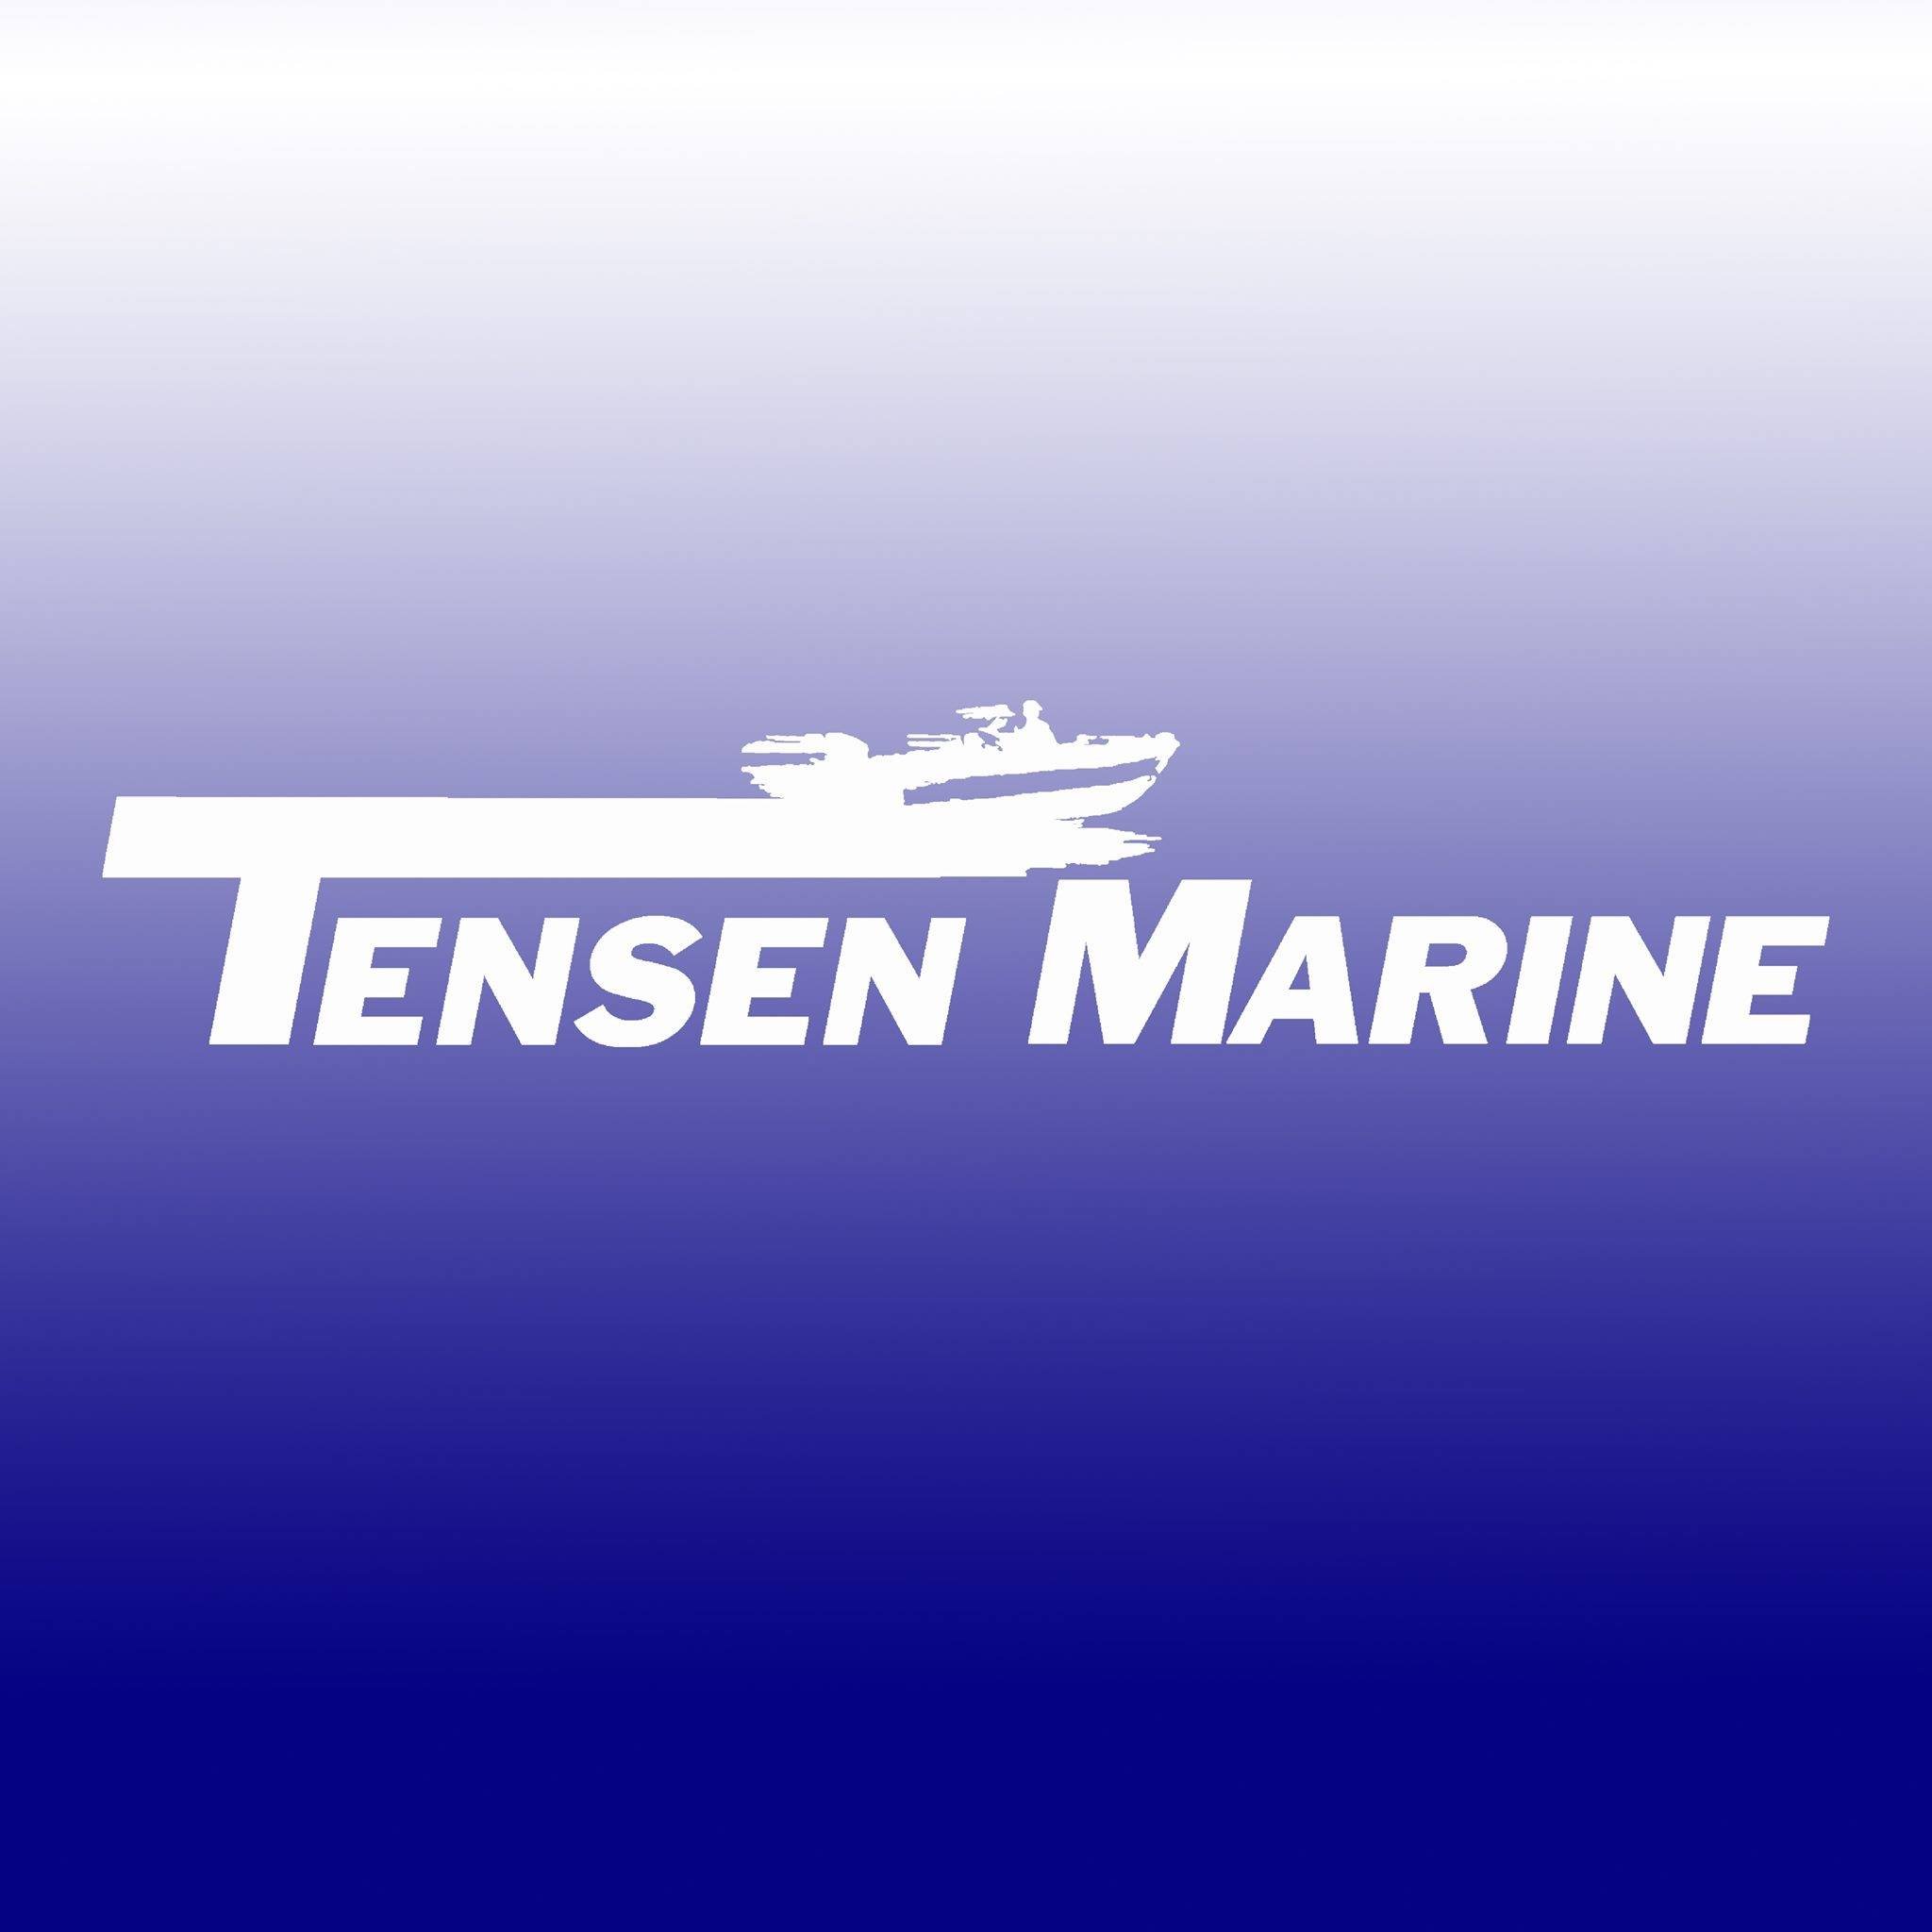 Tensen Marine.jpg